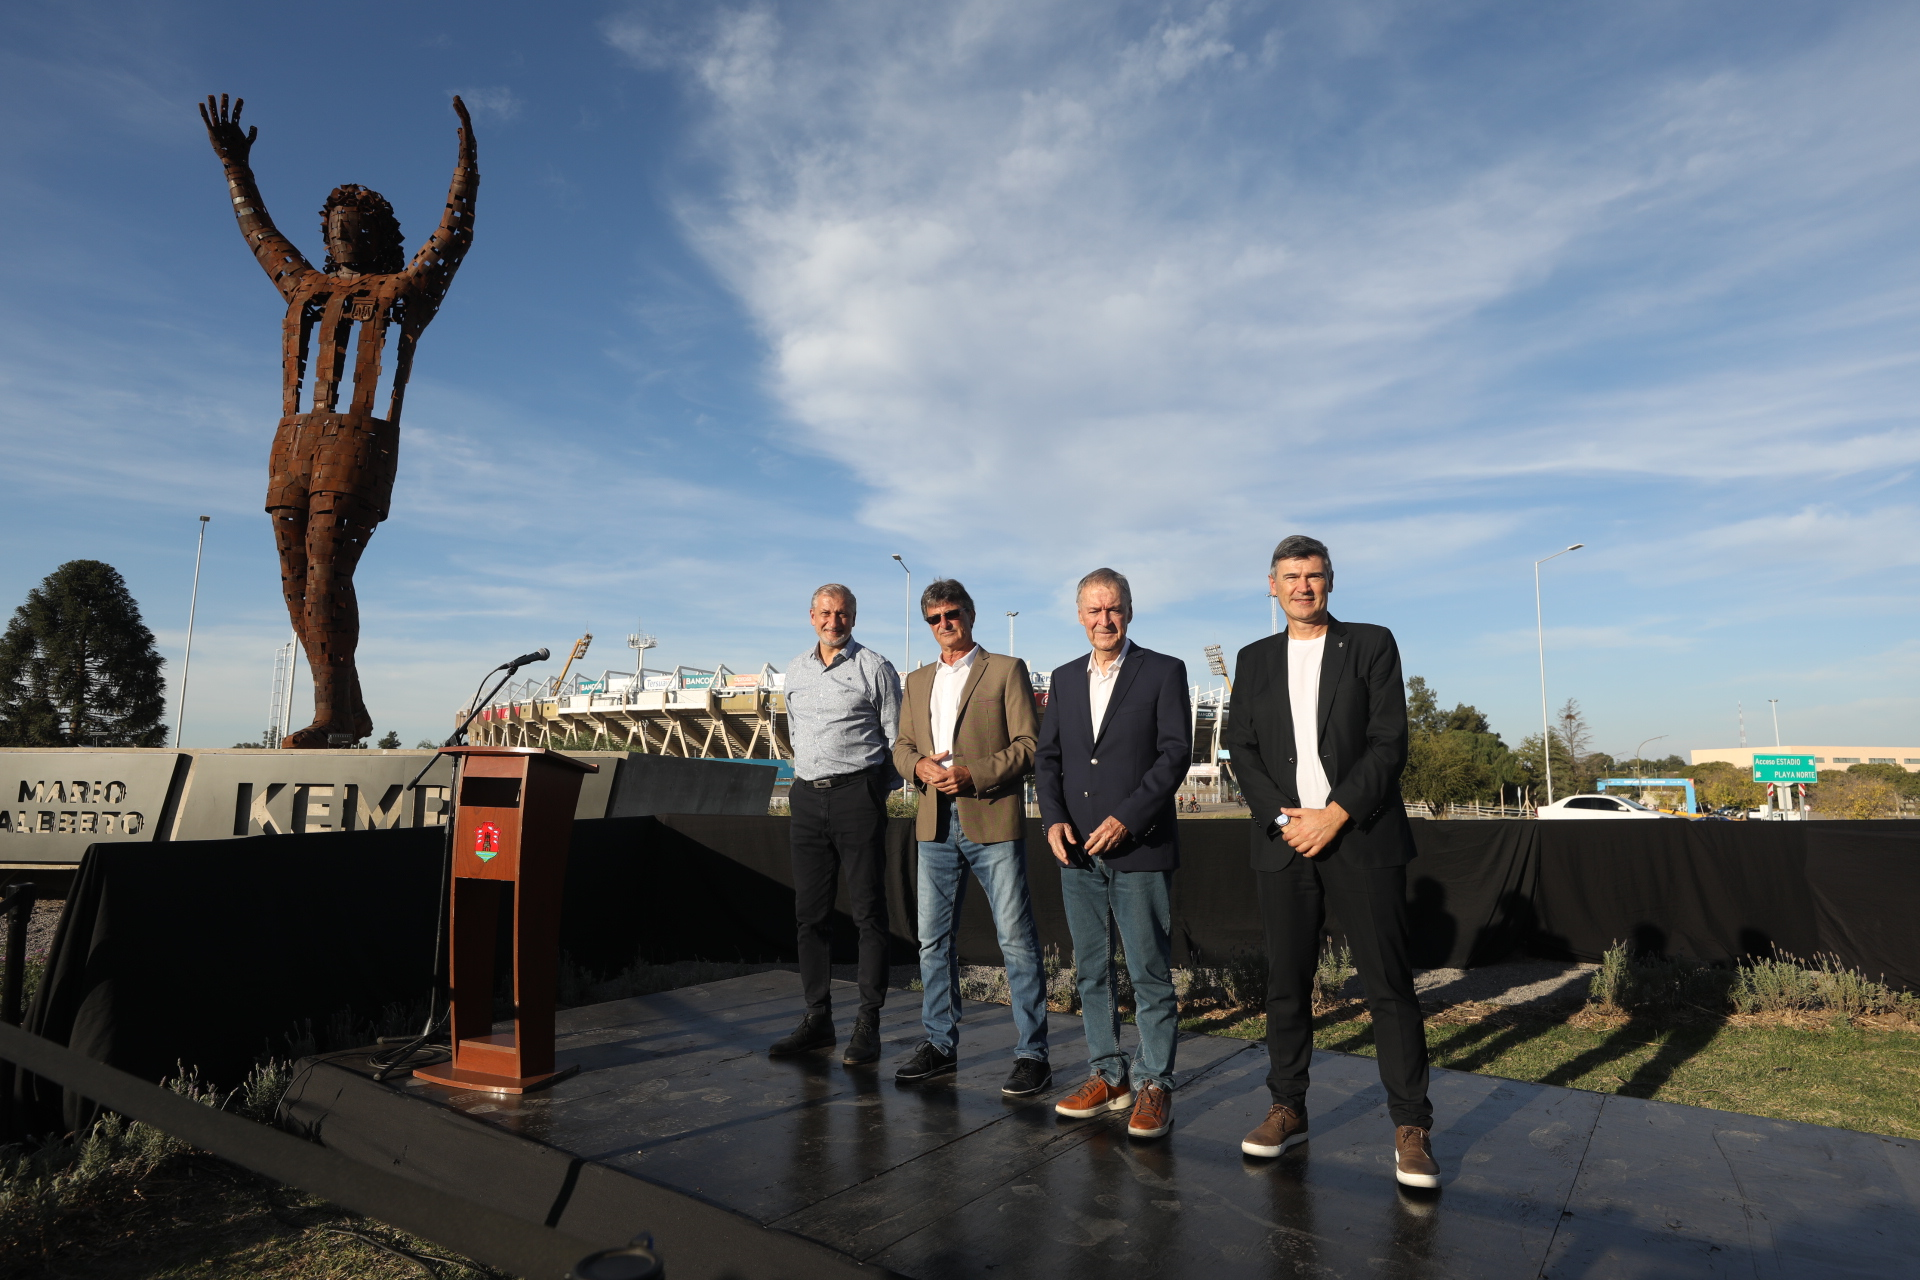 Con la presencia de Mario Kempes se inauguró la estatua al ingreso al estadio | Canal Showsport